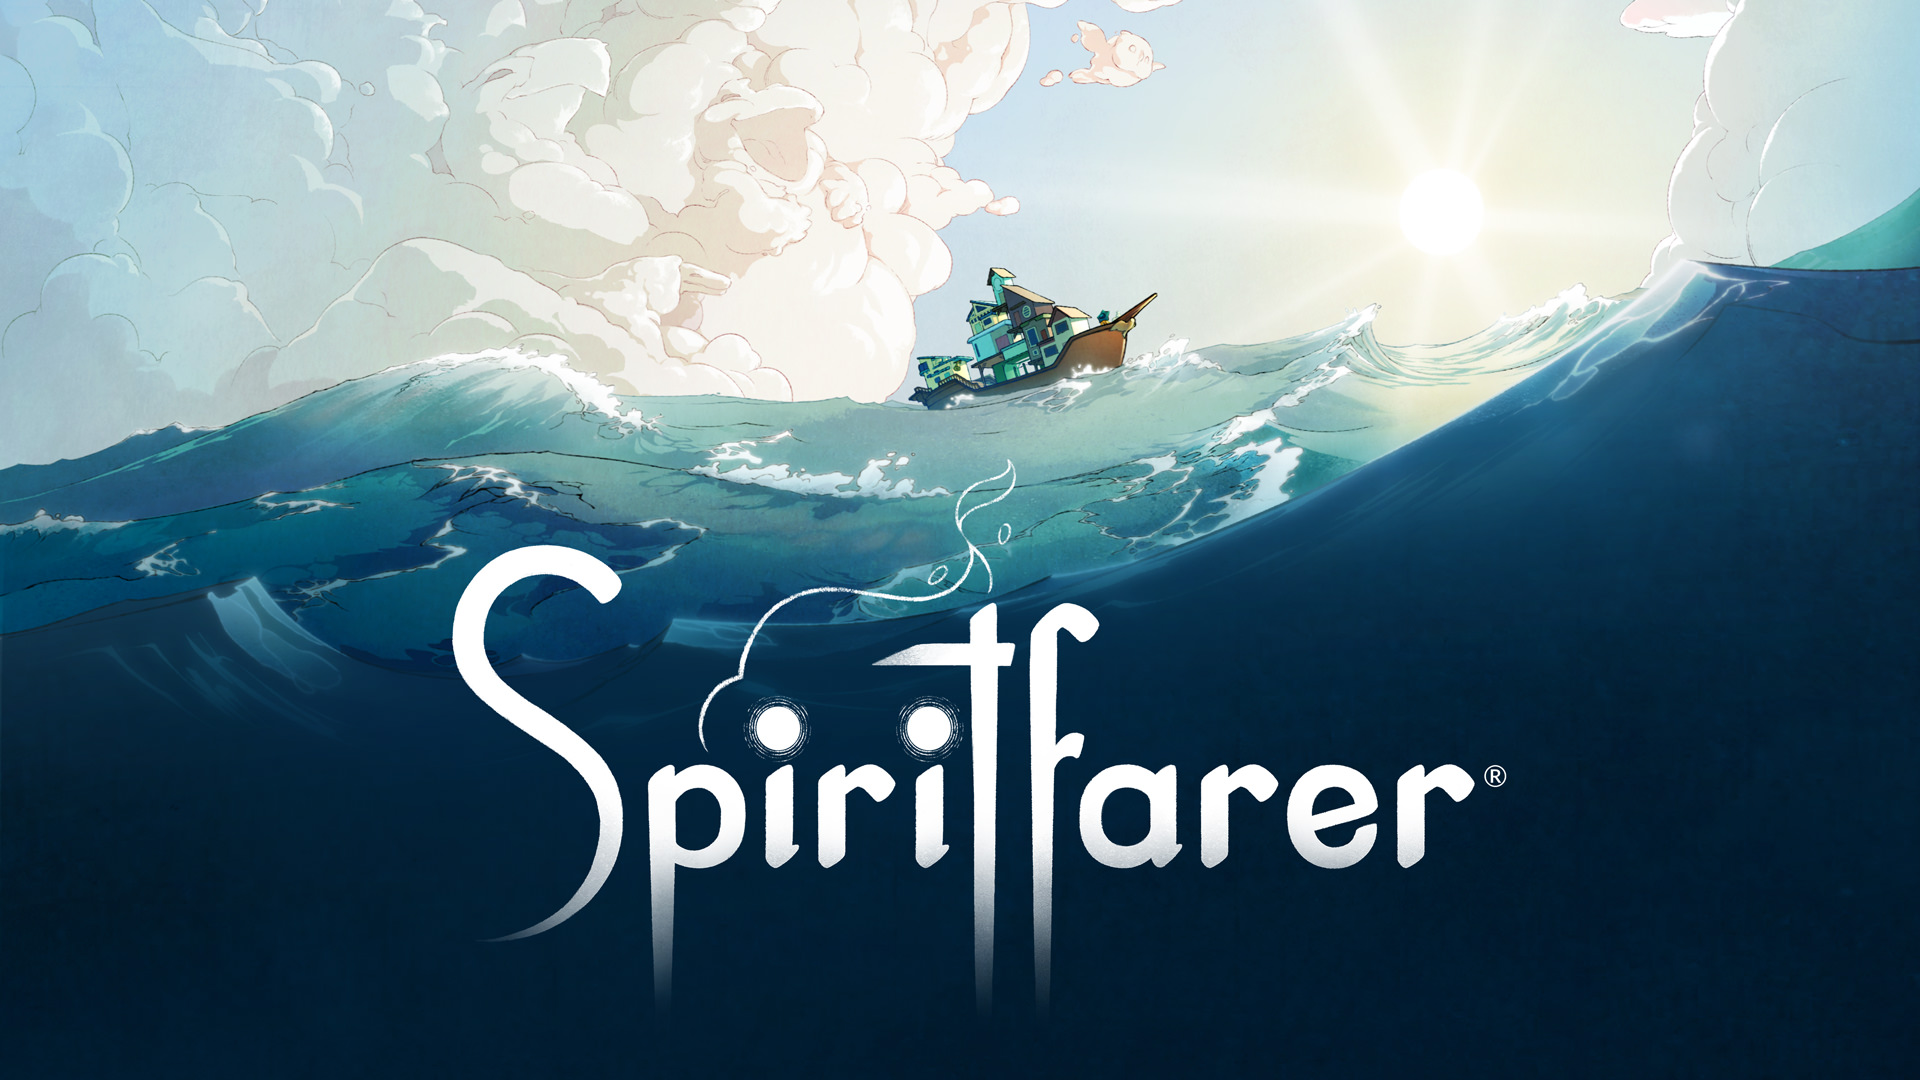 محتویات متنوع و اسپریت های تازه در آپدیت های جدید Spiritfarer 